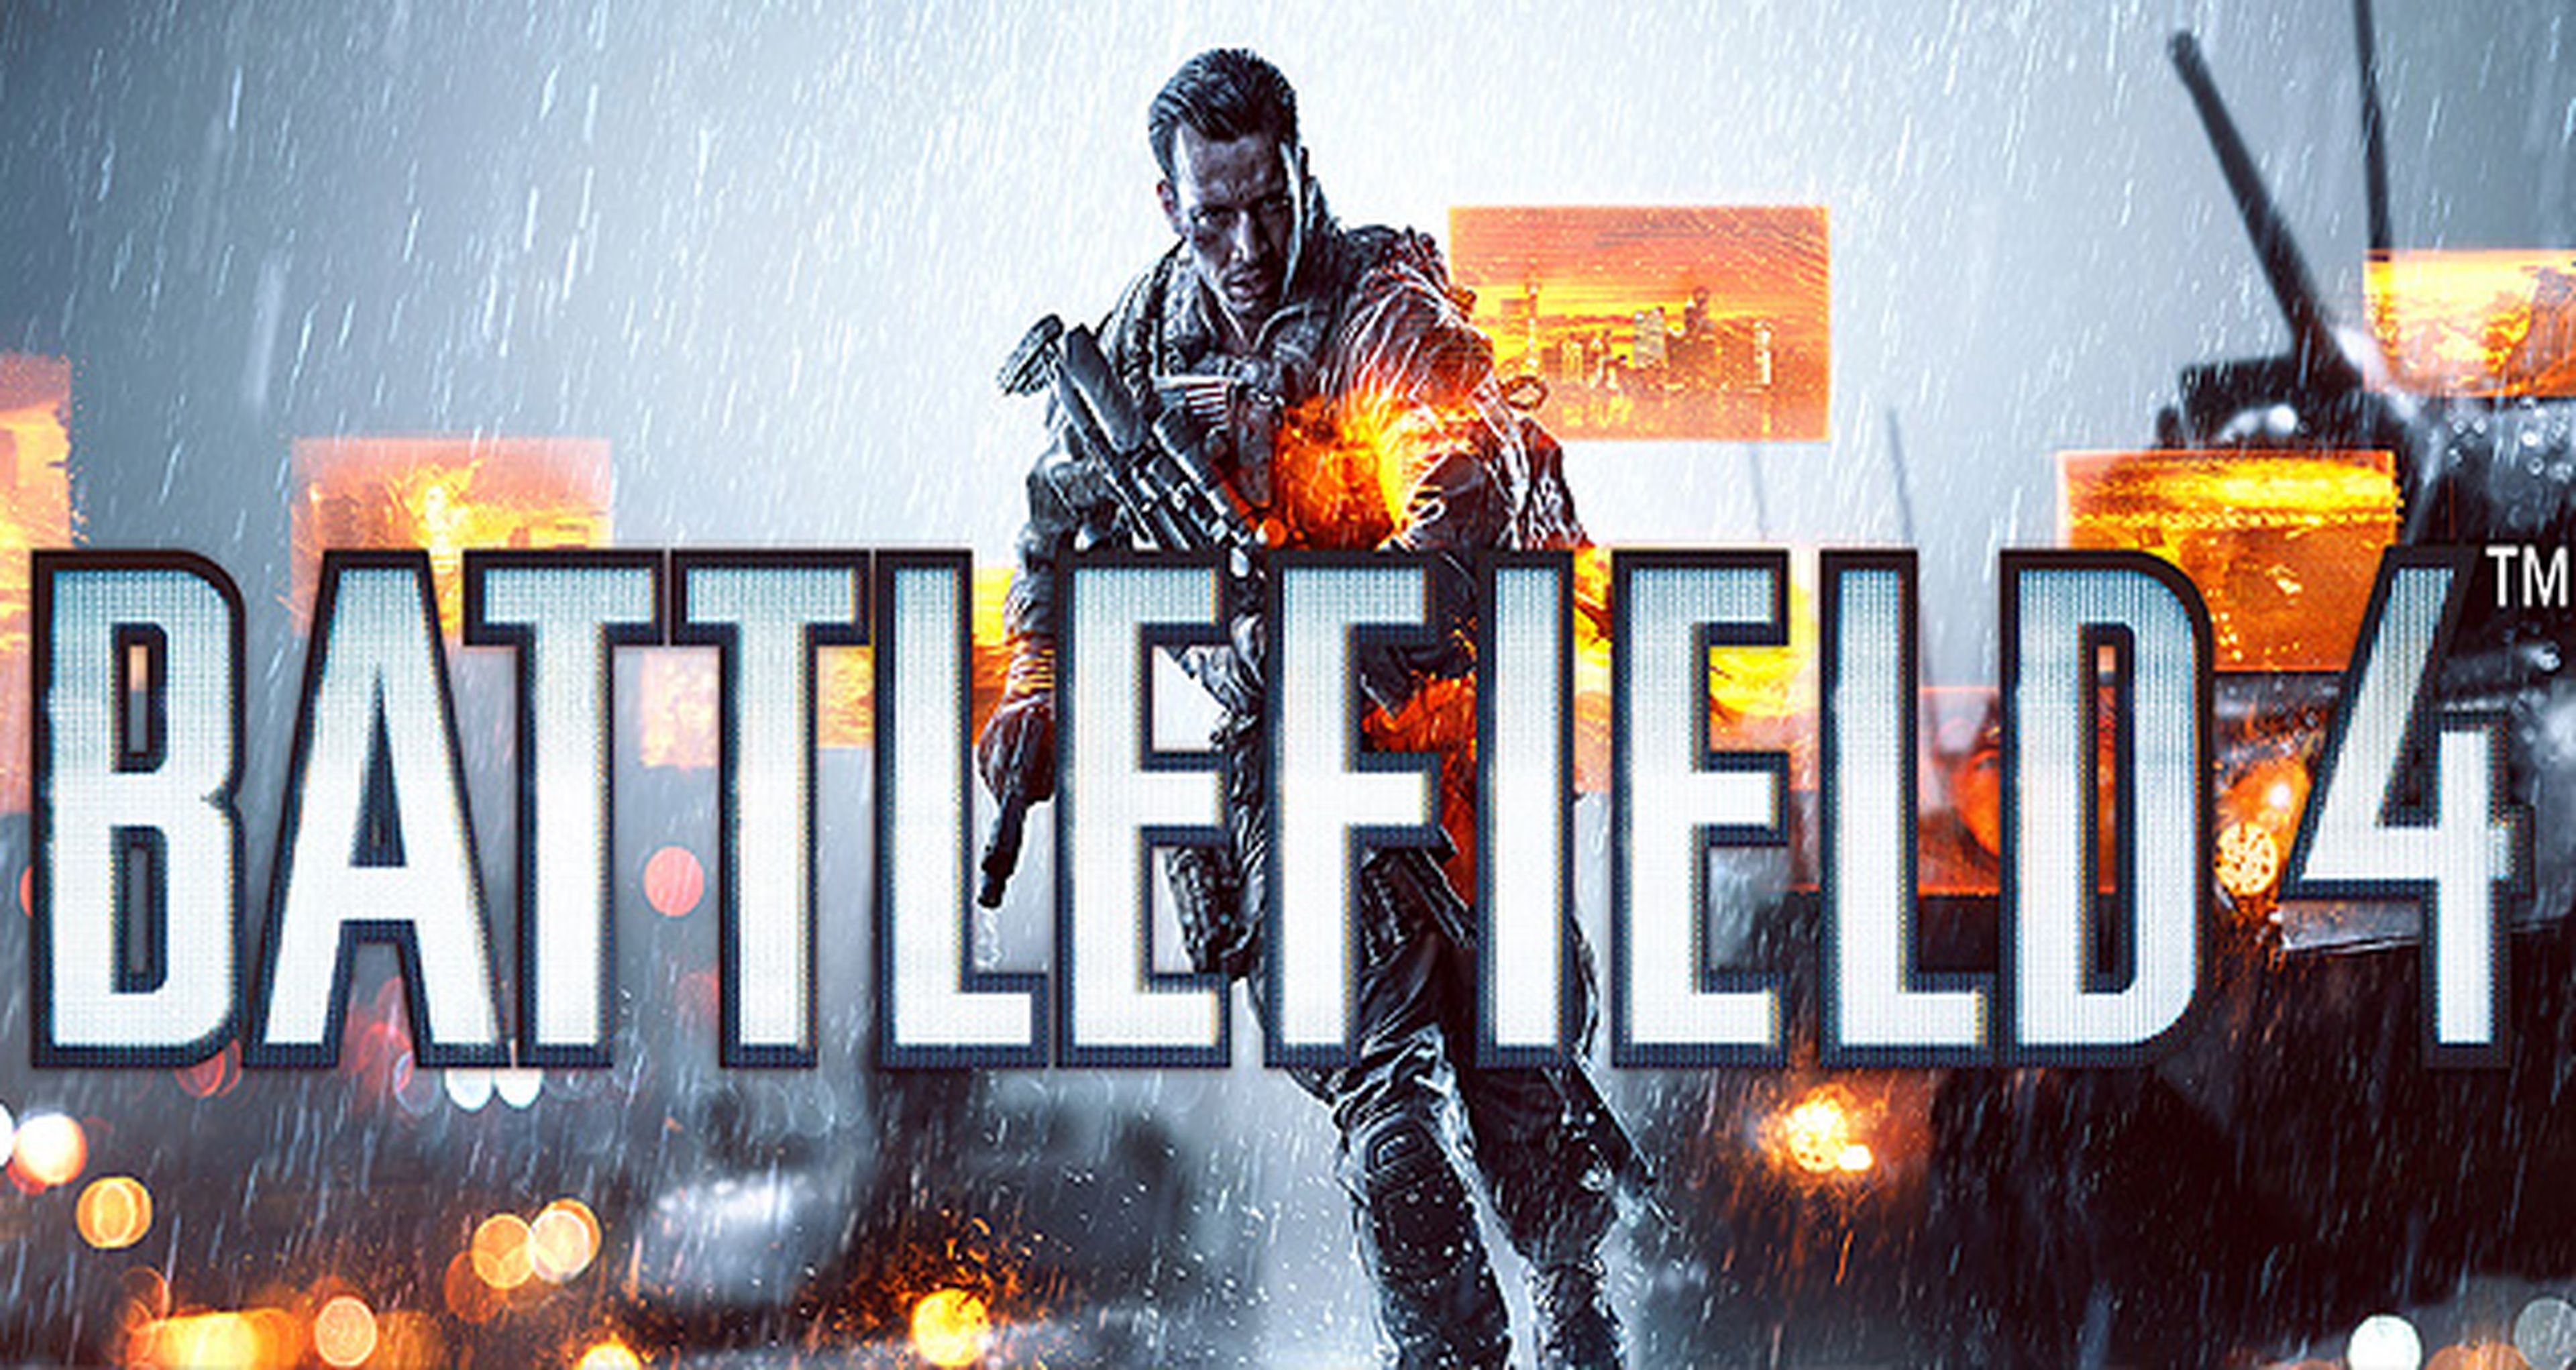 Battlefield 4 se presentará el 26 de marzo